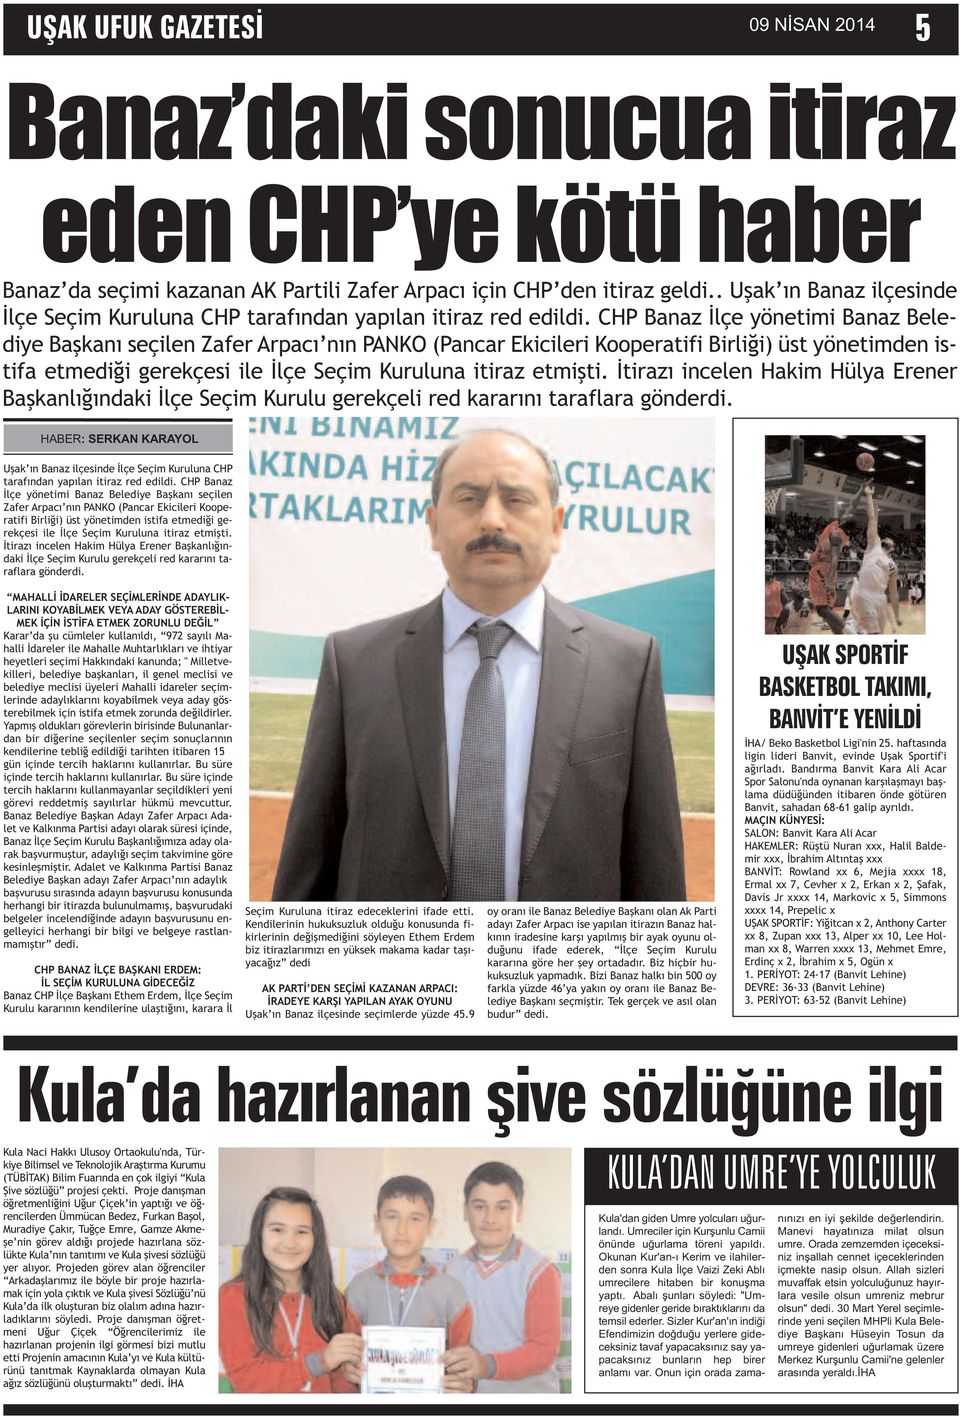 CHP Banaz İlçe yönetimi Banaz Belediye Başkanı seçilen Zafer Arpacı nın PANKO (Pancar Ekicileri Kooperatifi Birliği) üst yönetimden istifa etmediği gerekçesi ile İlçe Seçim Kuruluna itiraz etmişti.